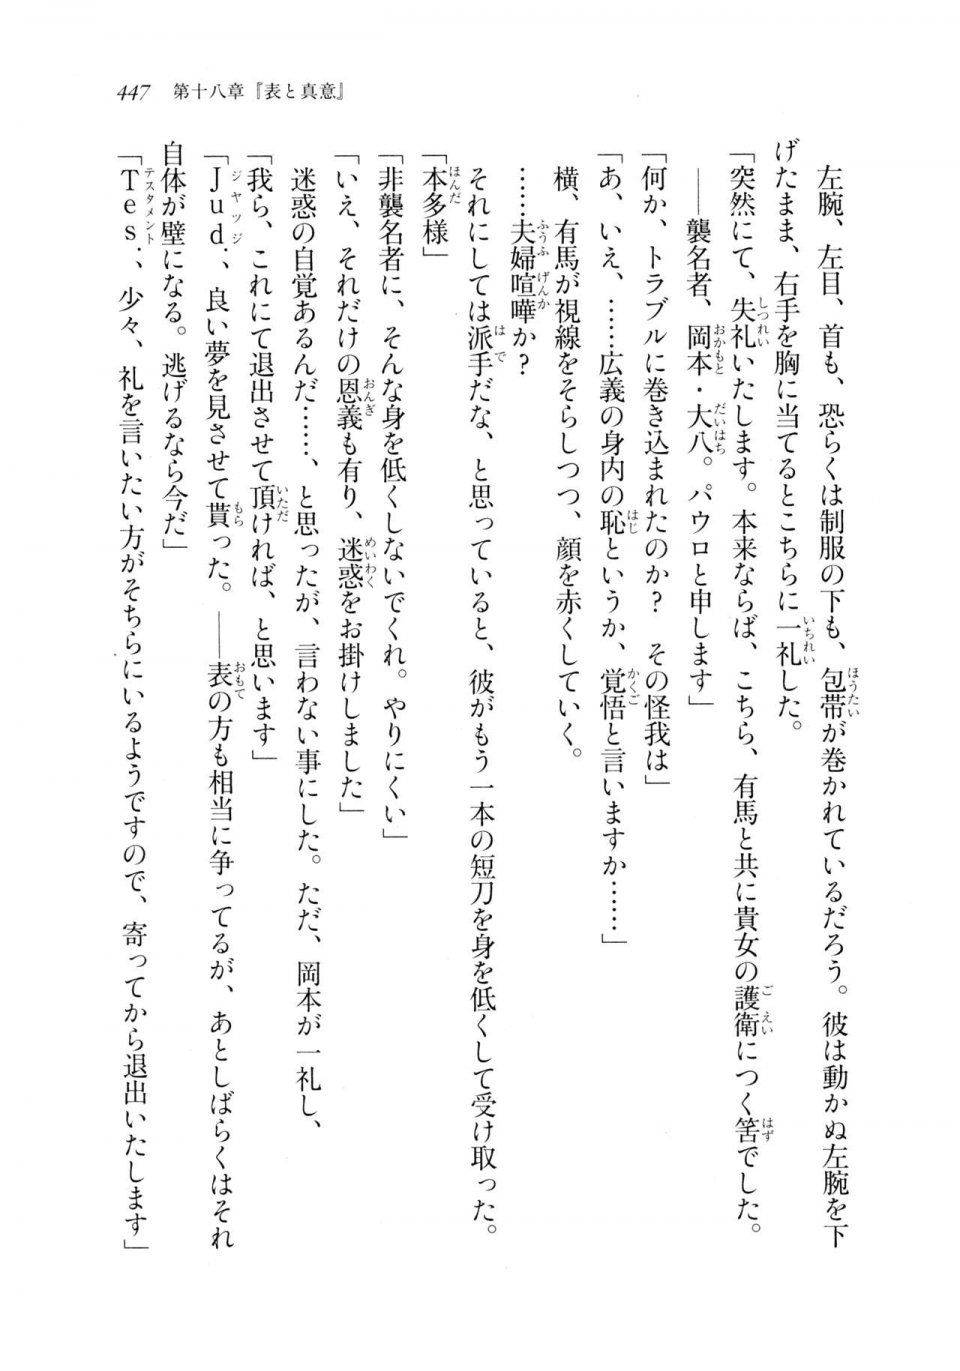 Kyoukai Senjou no Horizon LN Sidestory Vol 2 - Photo #445